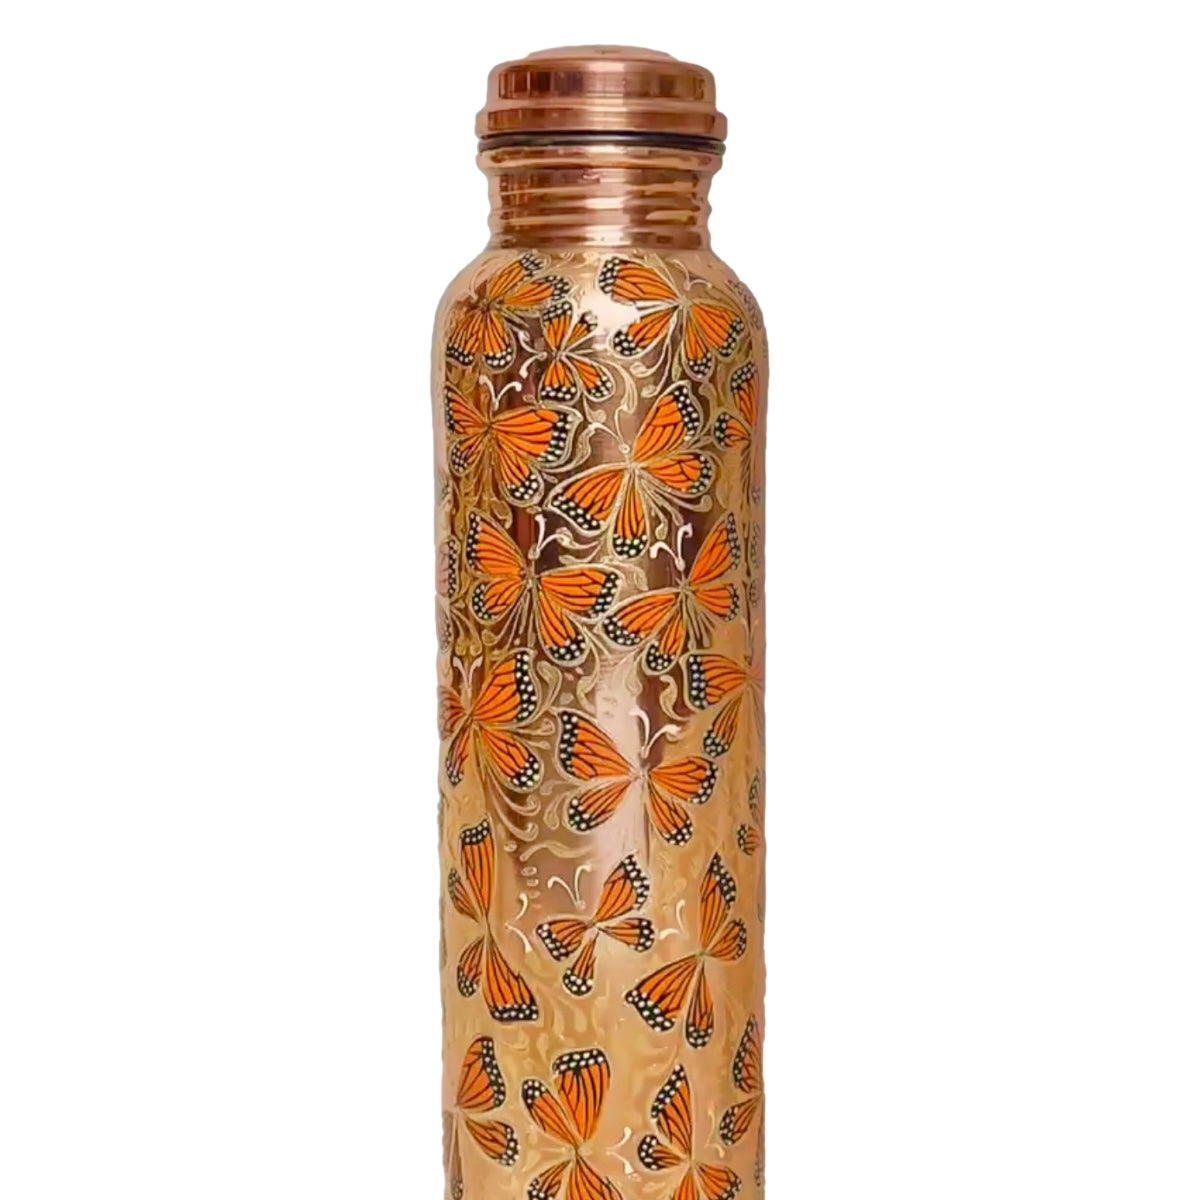 Mexican Copper 1 L / 33 oz. Water Bottle- Hand Painted Monarca CoLores Decor